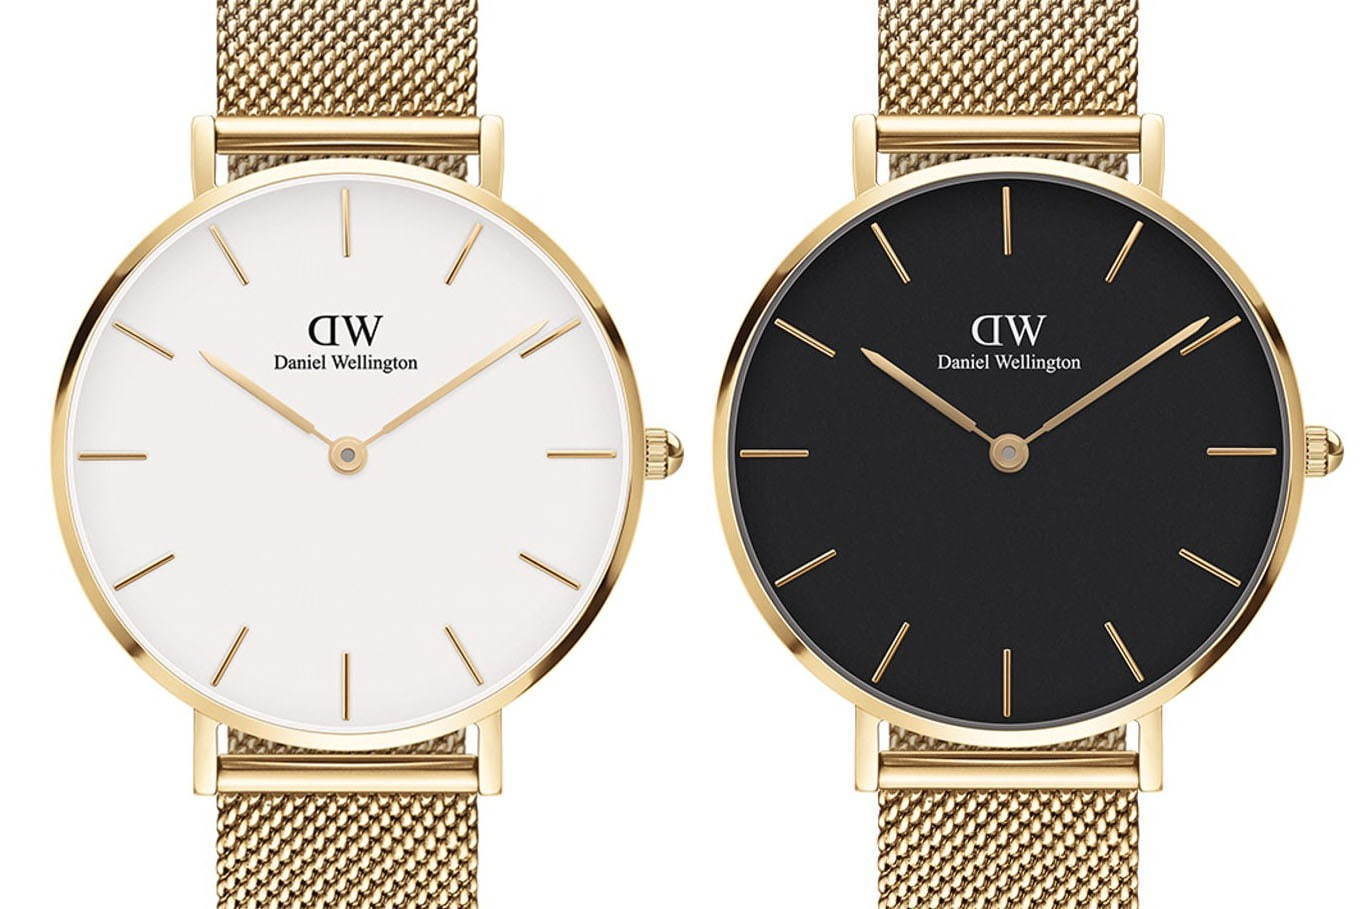 ダニエル・ウェリントンの腕時計「ペティット」に新色ゴールド、2色の 